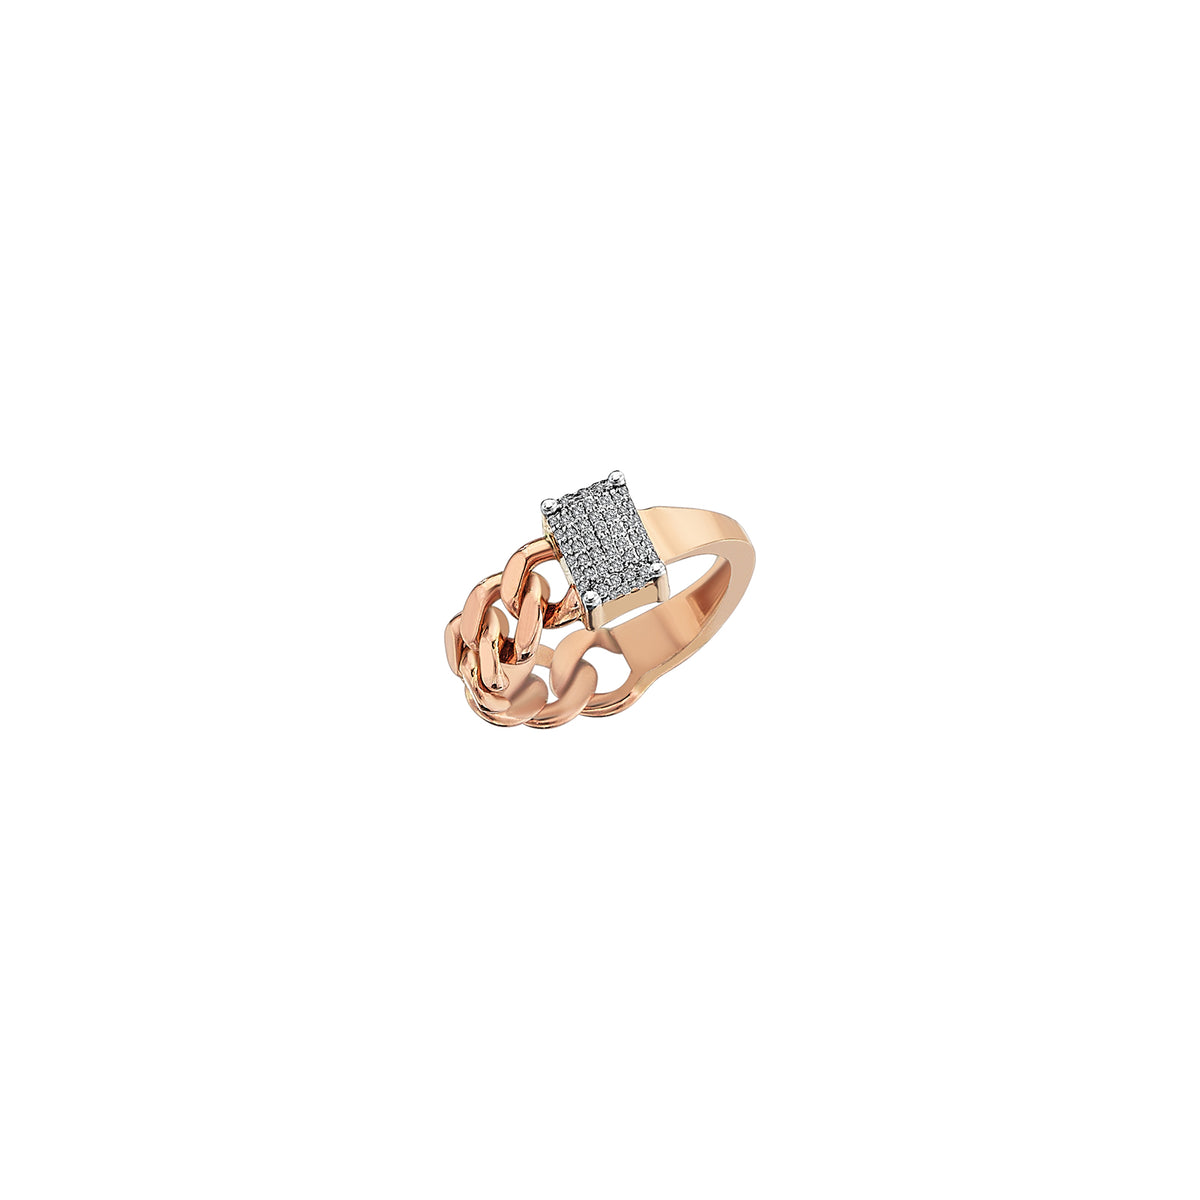 Bound Pinky Ring Roslow Gold / White Brilliant Diamond / 2 (EU 42)